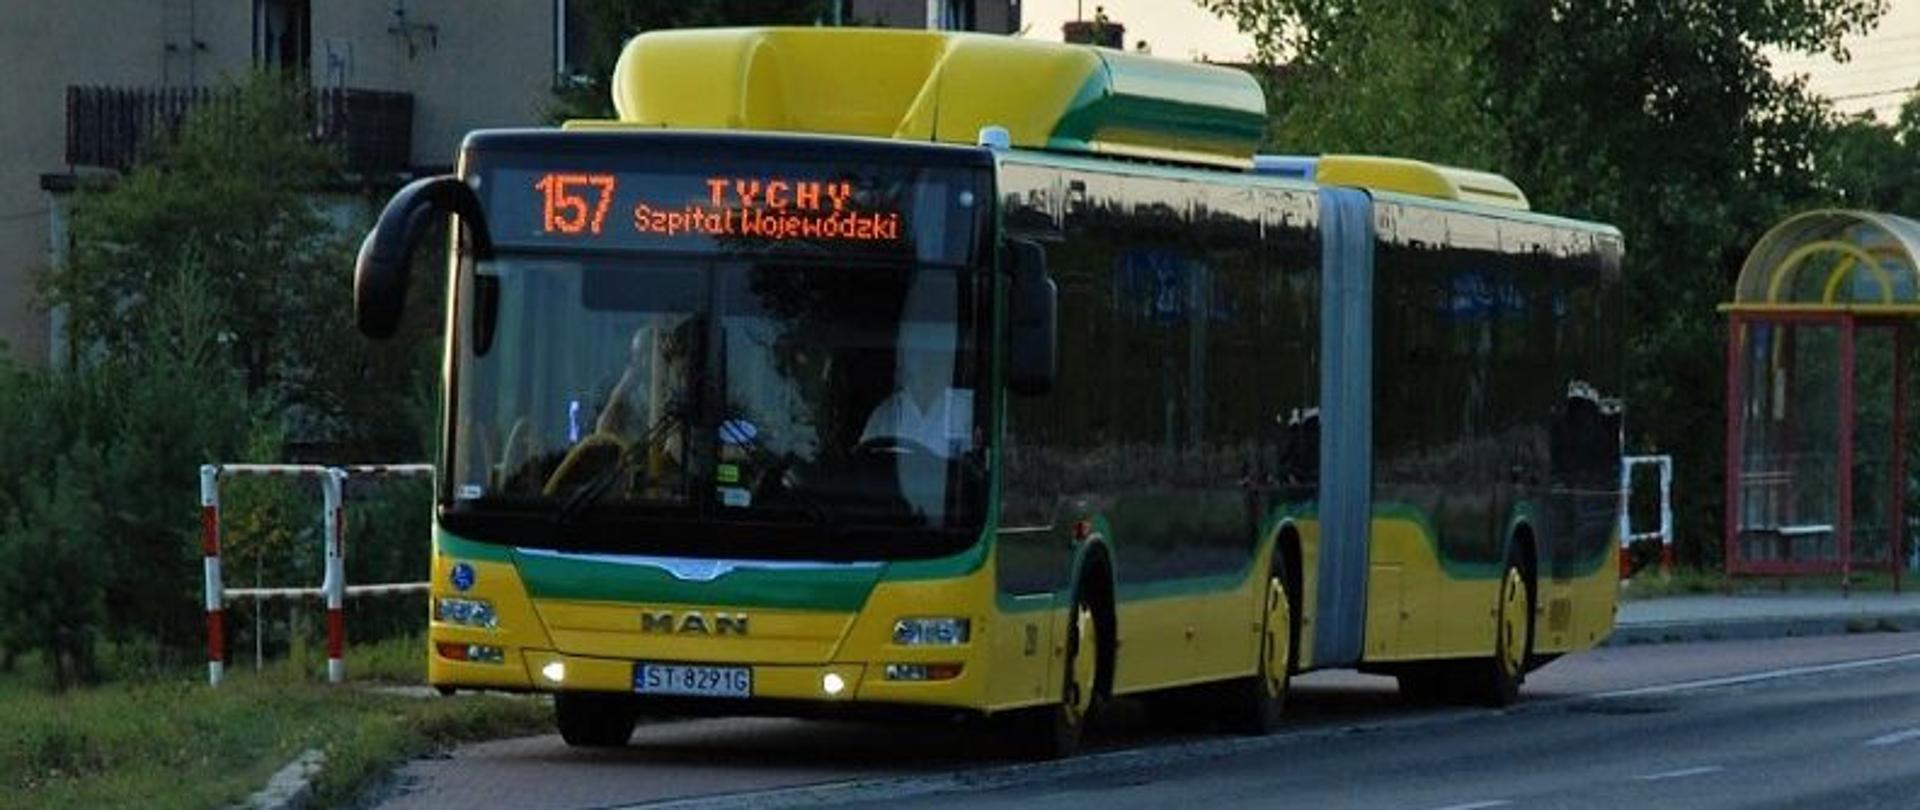 Zielono-żółty autobus linii 157 odjeżdżający z przystanku